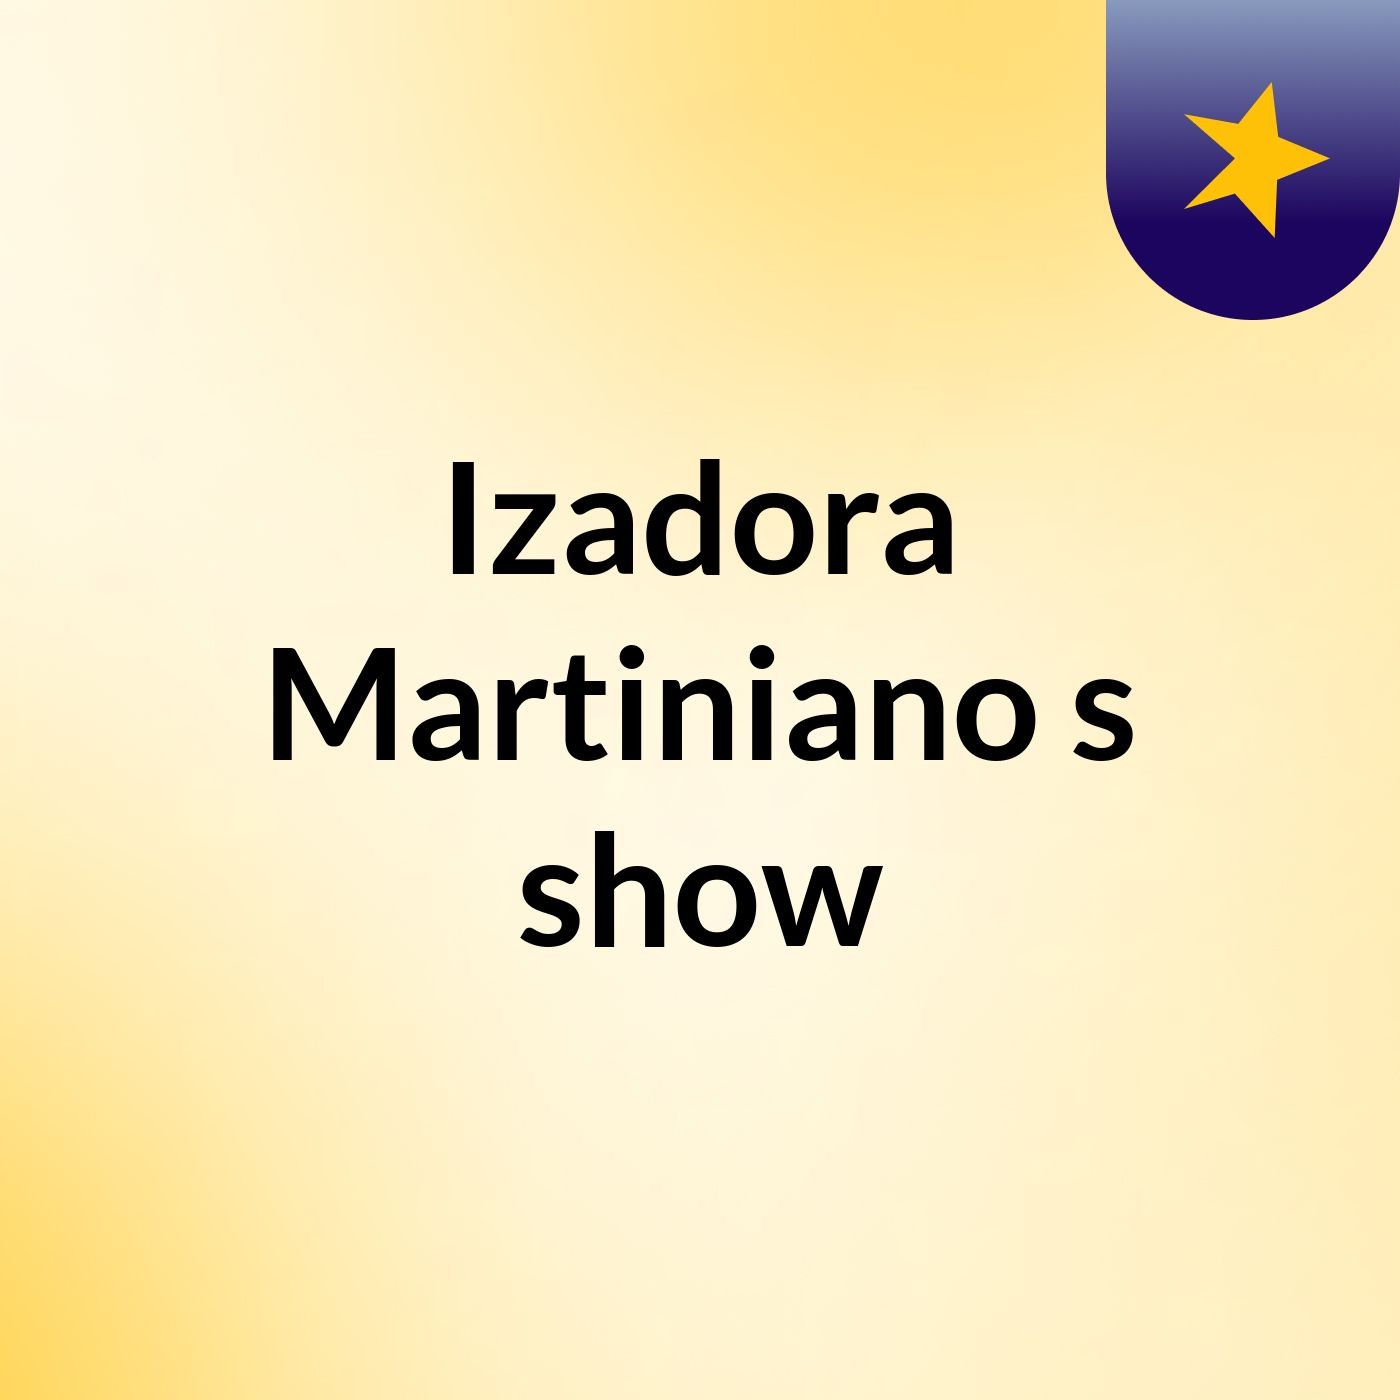 Izadora Martiniano's show